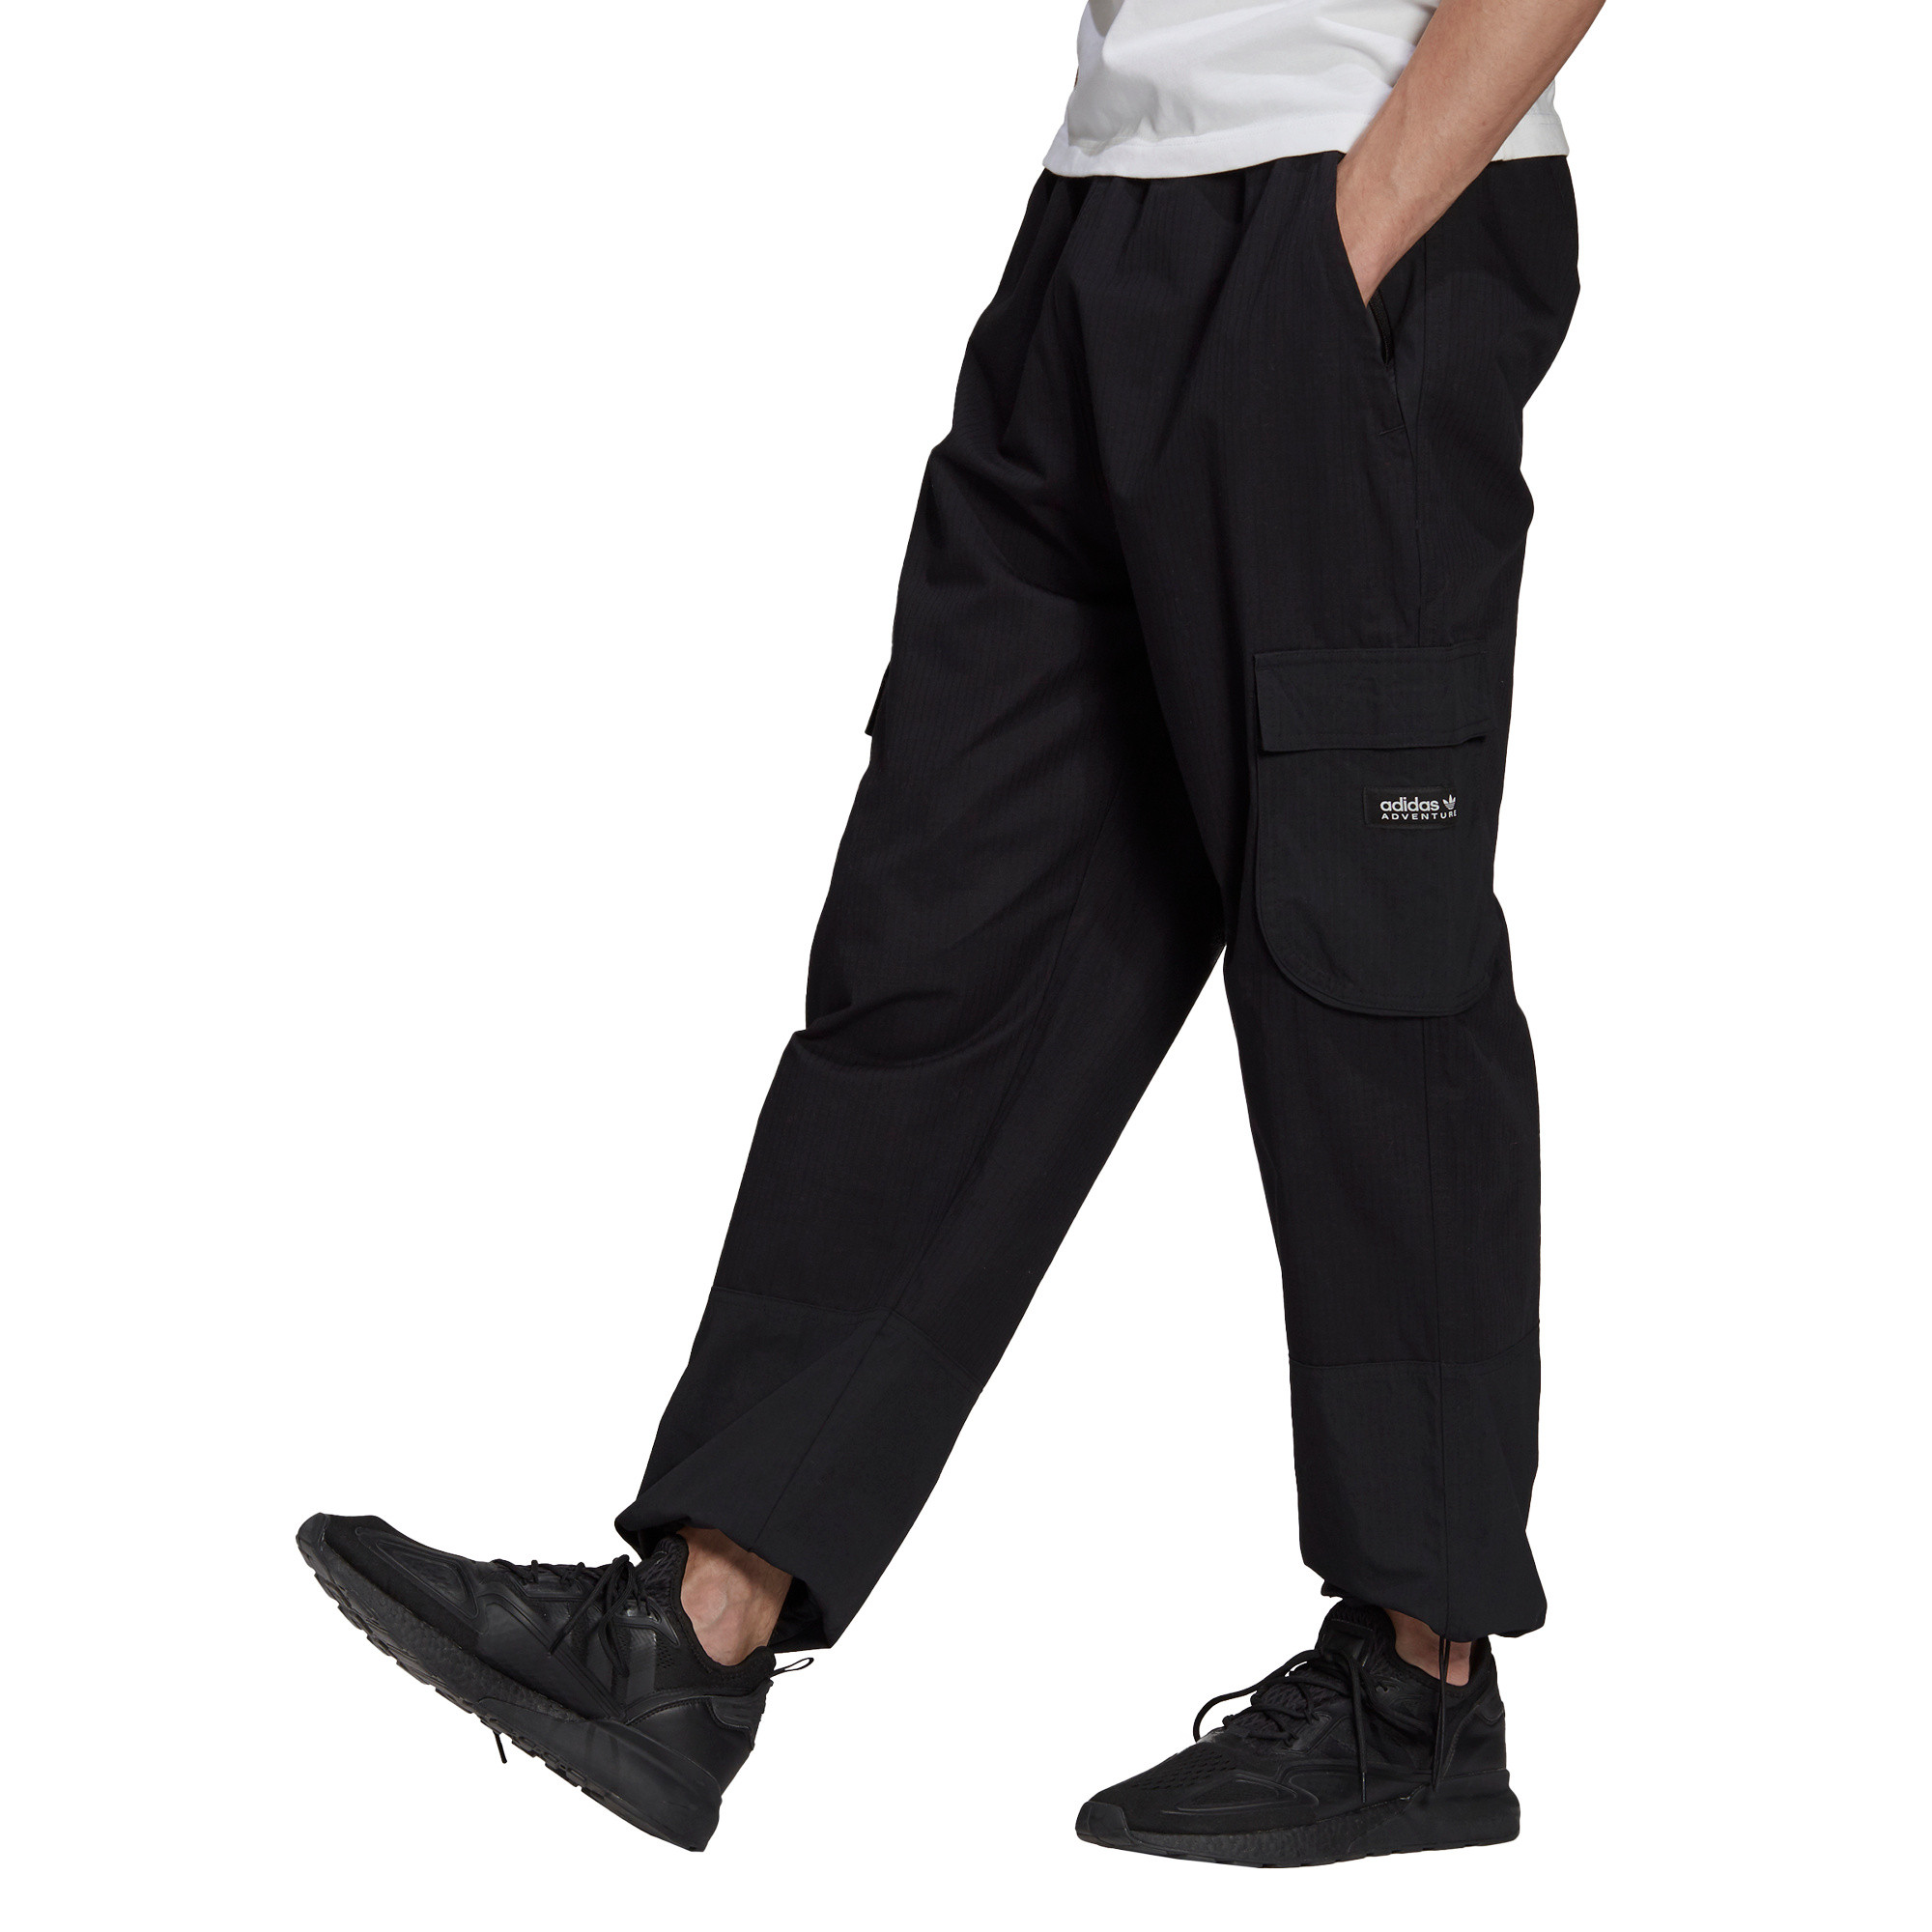 Pantaloni adidas Adventure Cargo, Nero, large image number 1